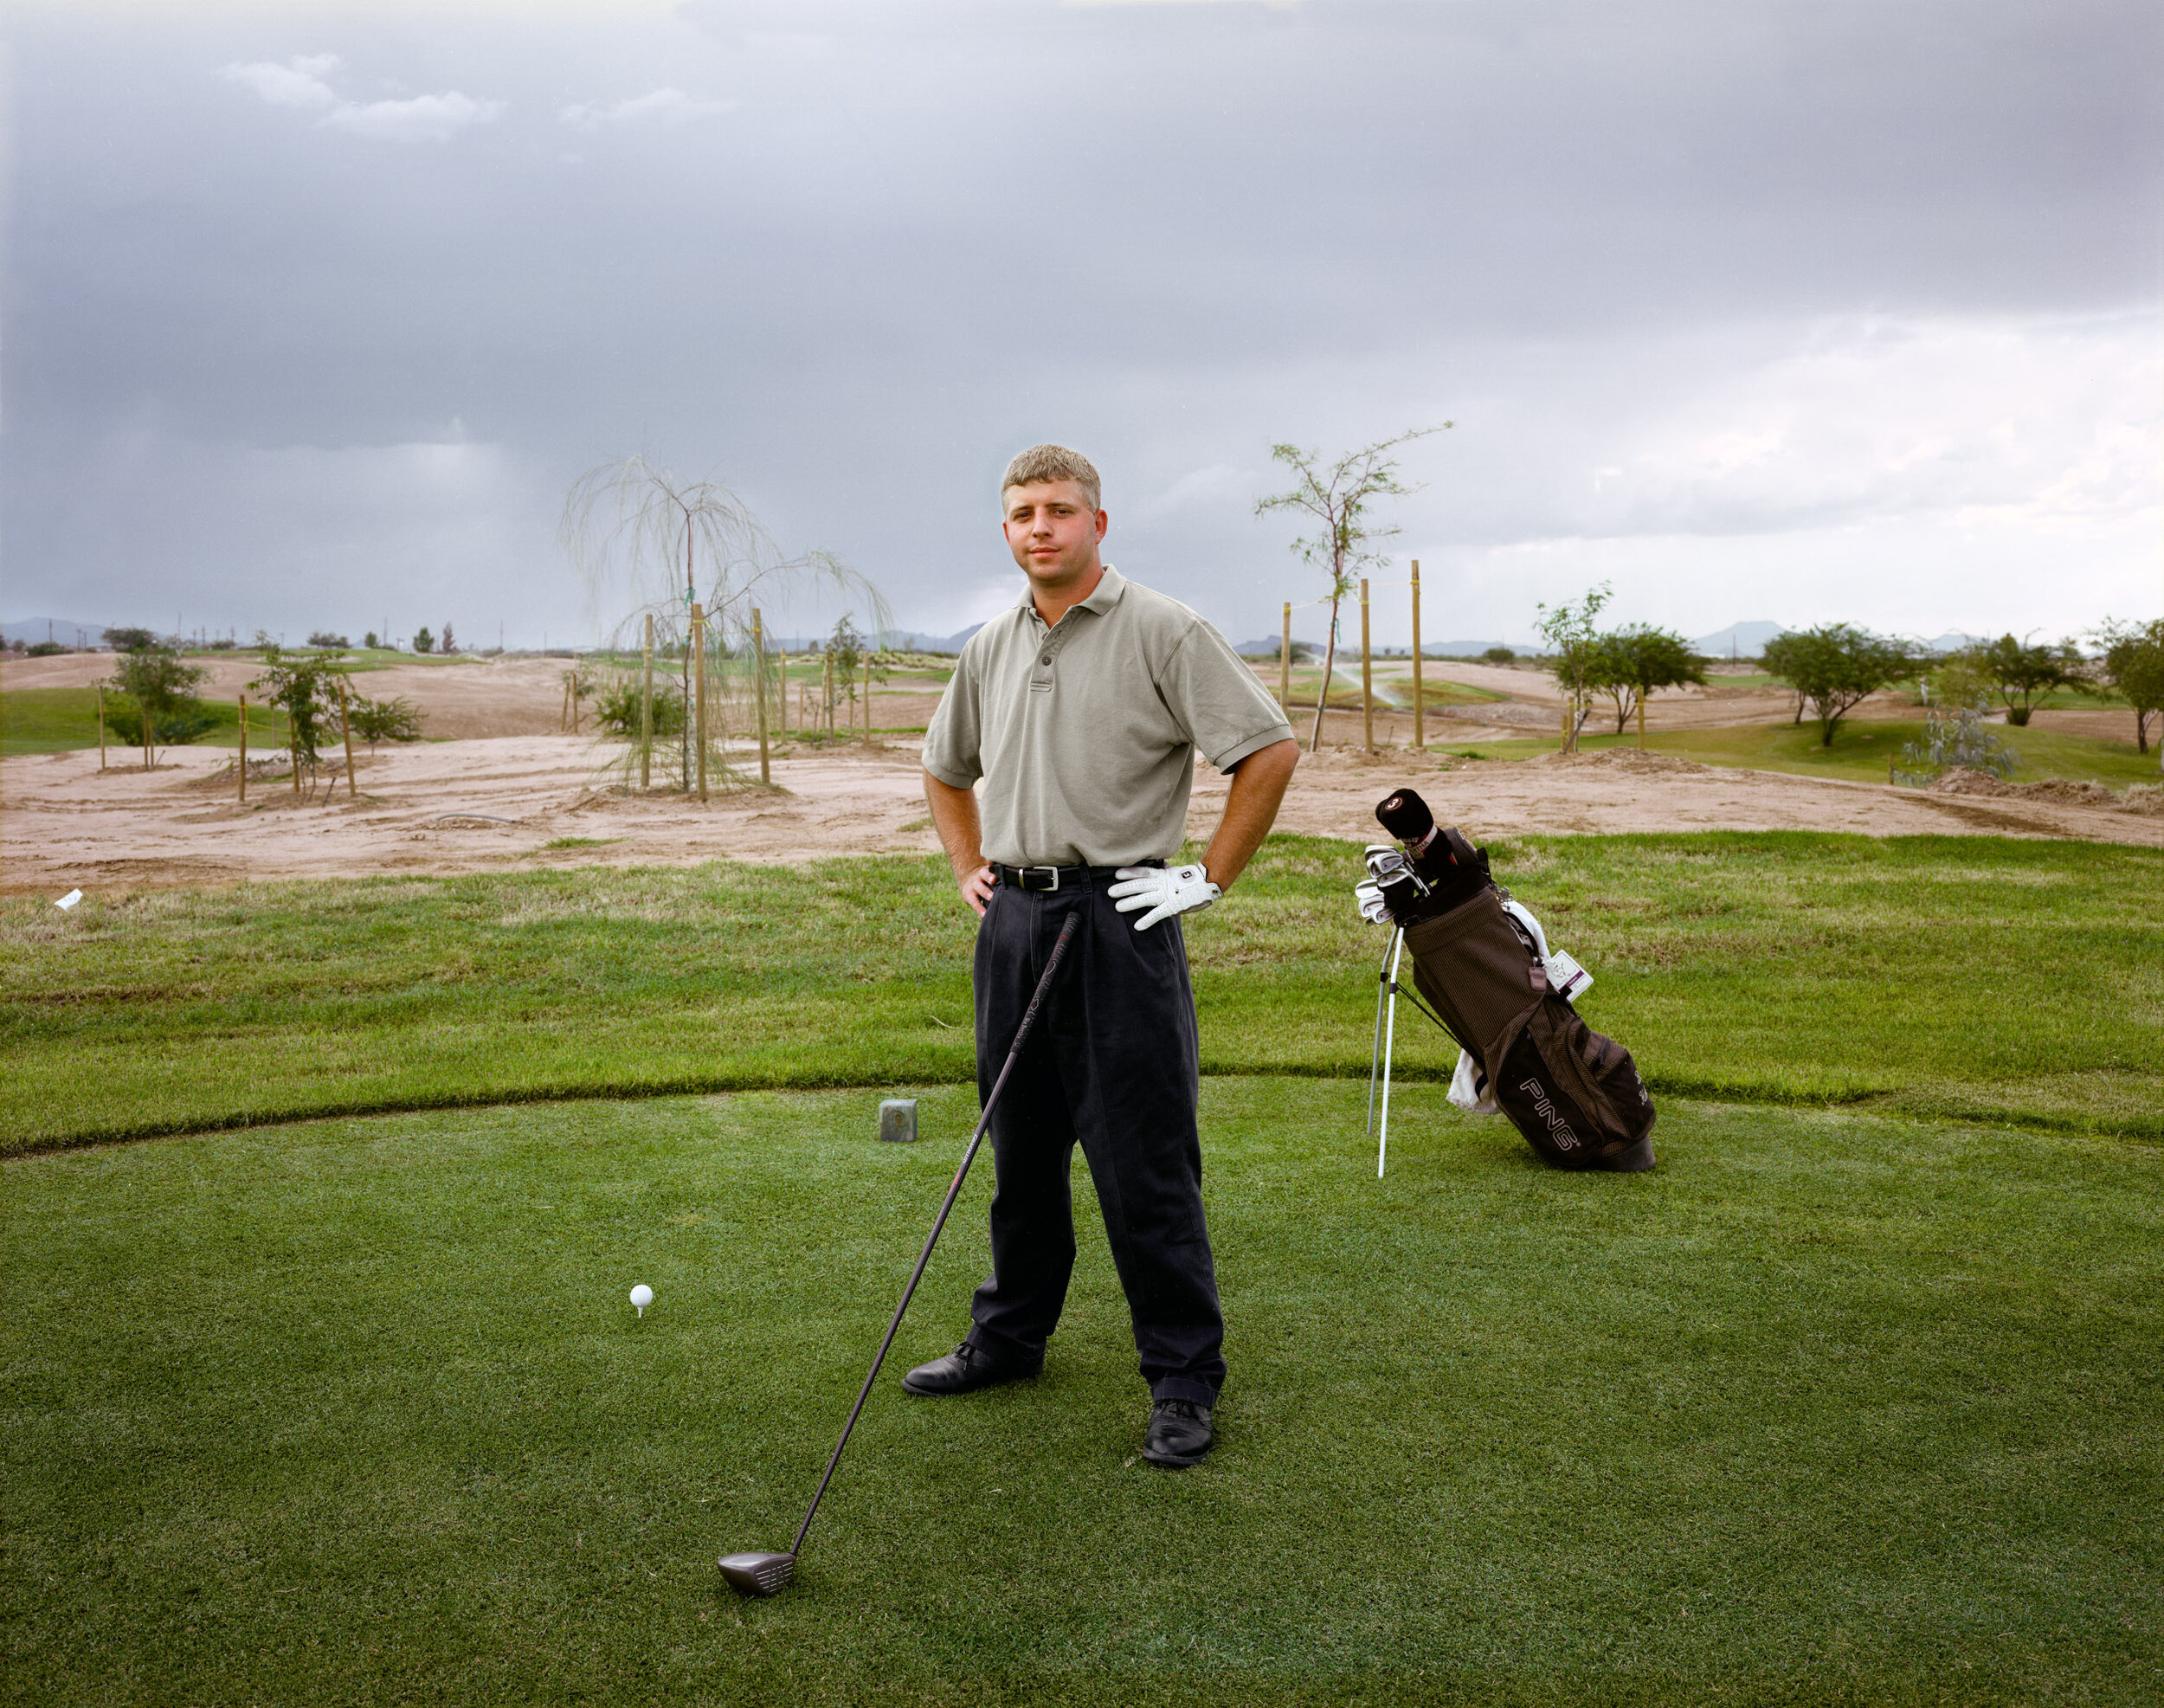 Golfer Teeing Off, Picacho, Arizona, August 1999